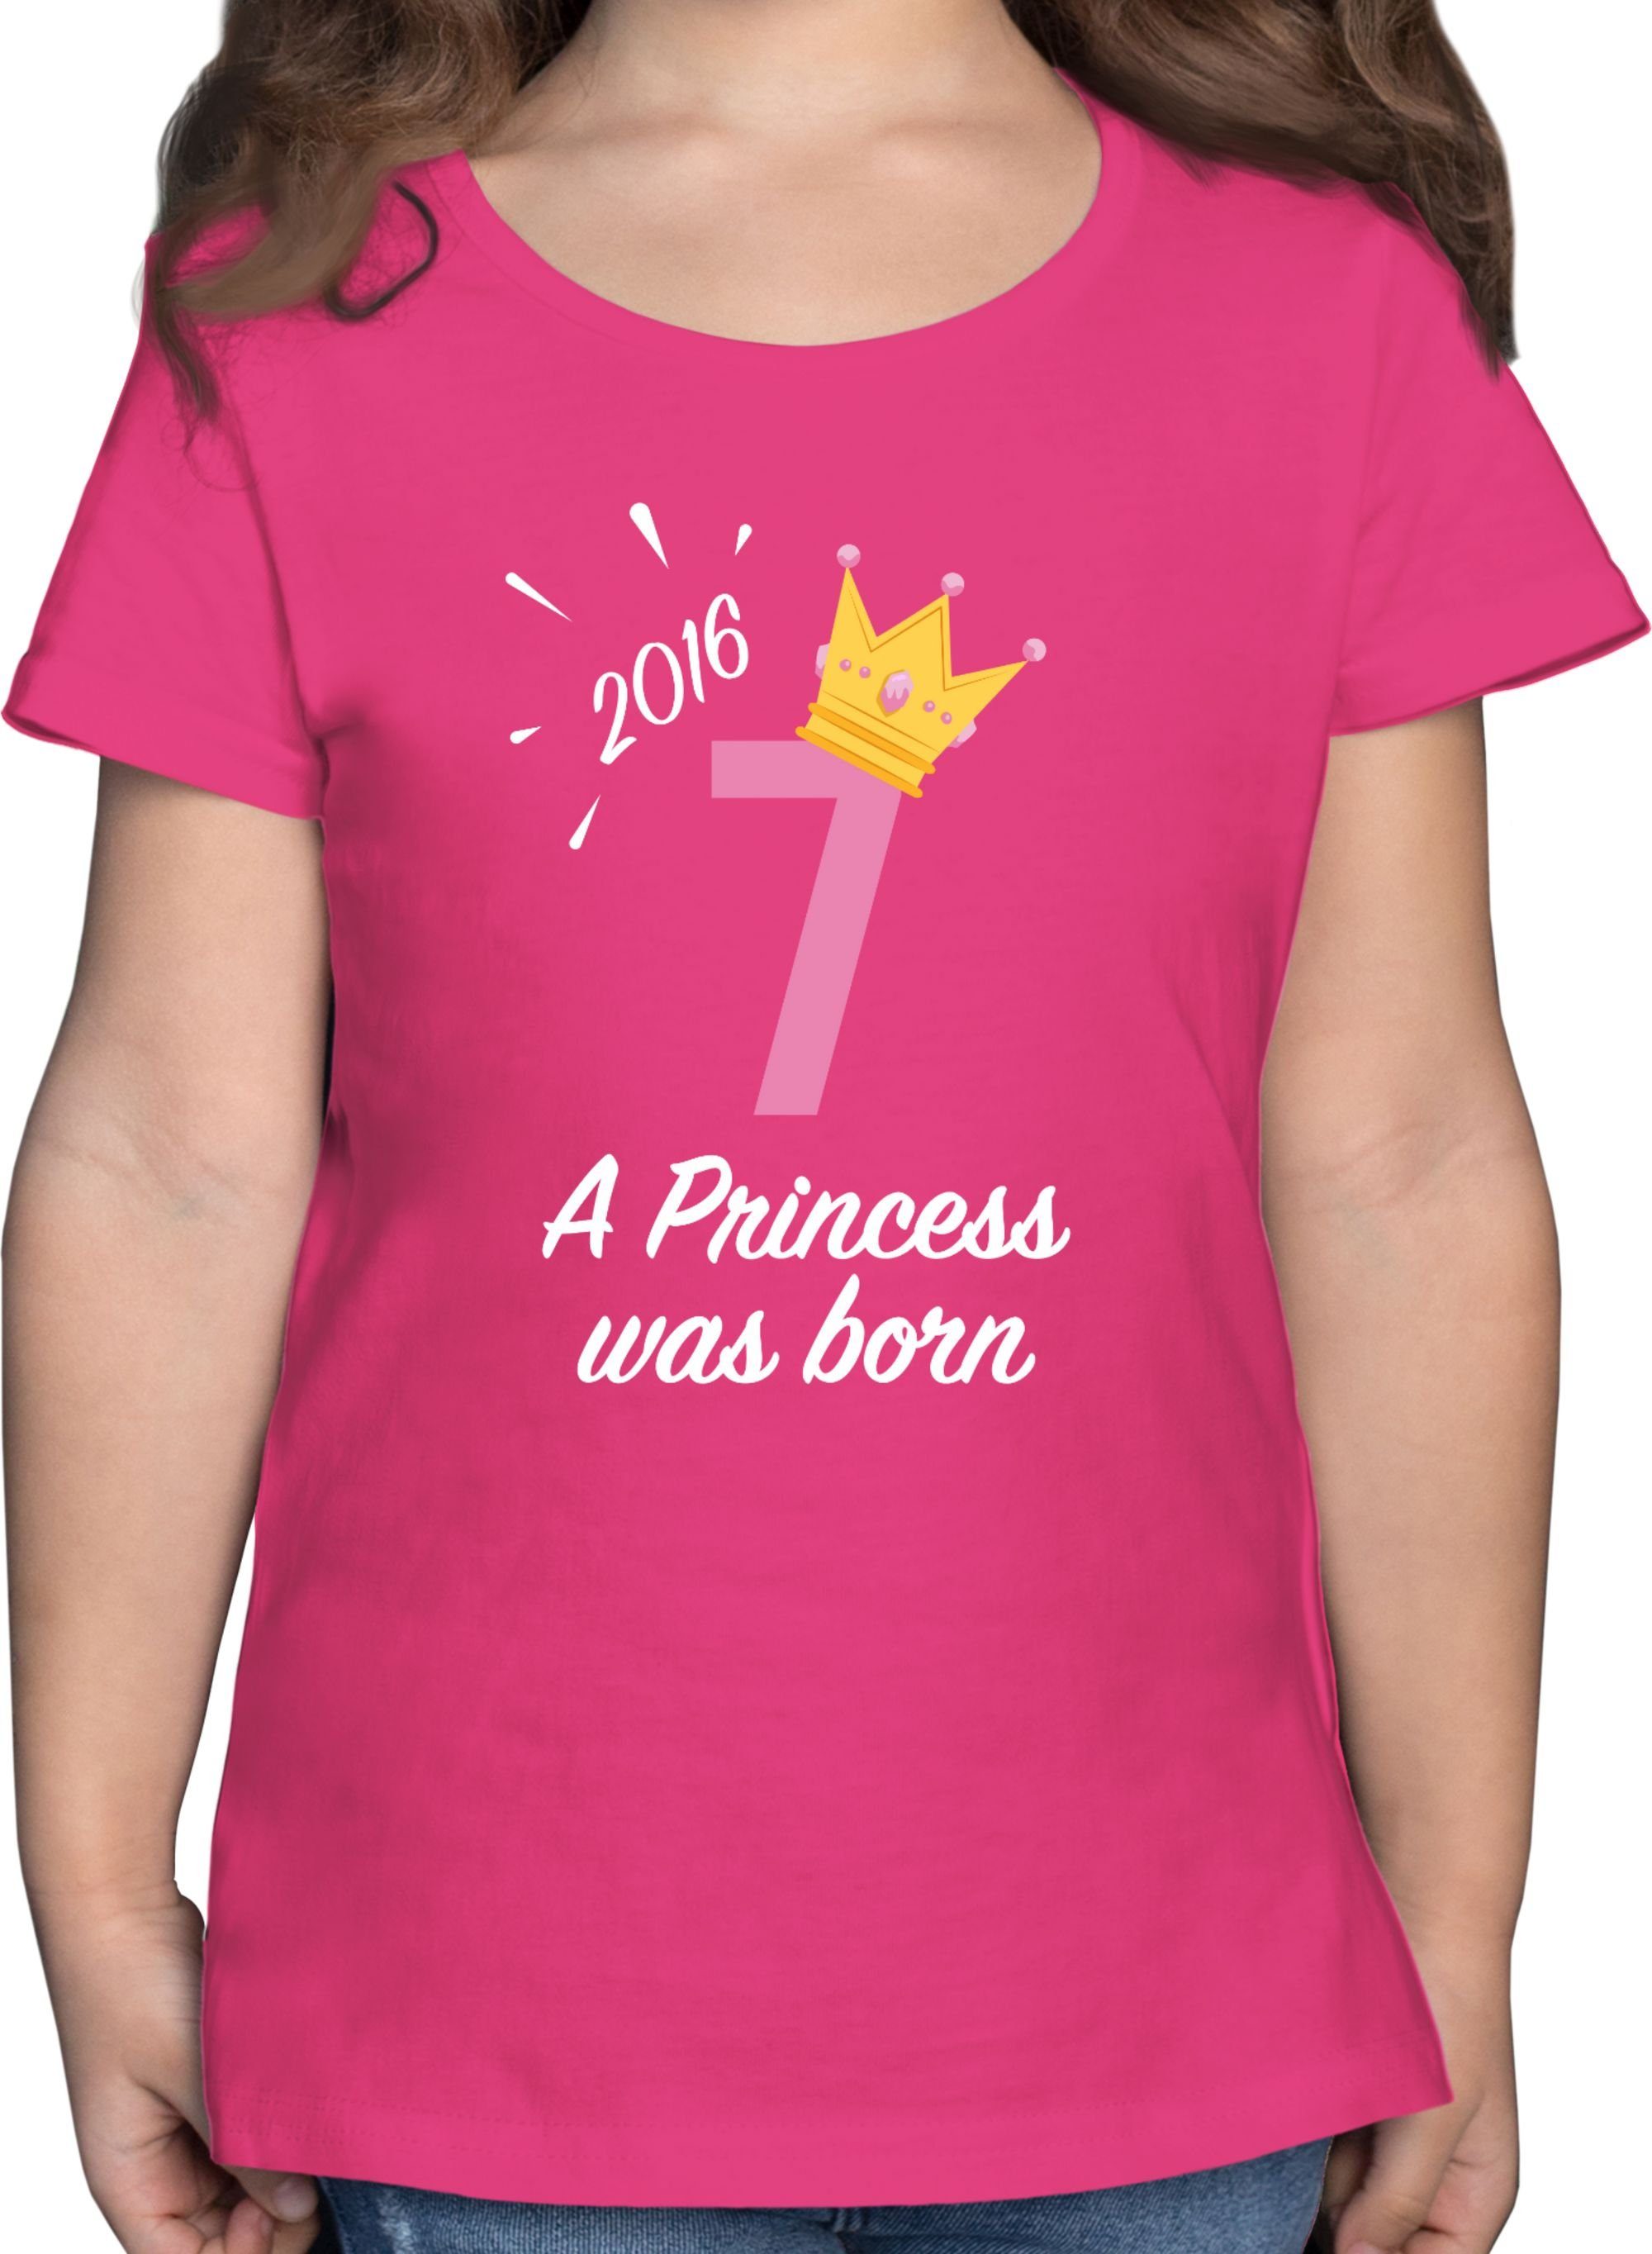 Shirtracer T-Shirt Siebter Mädchen Princess 2016 7. Geburtstag 1 Fuchsia